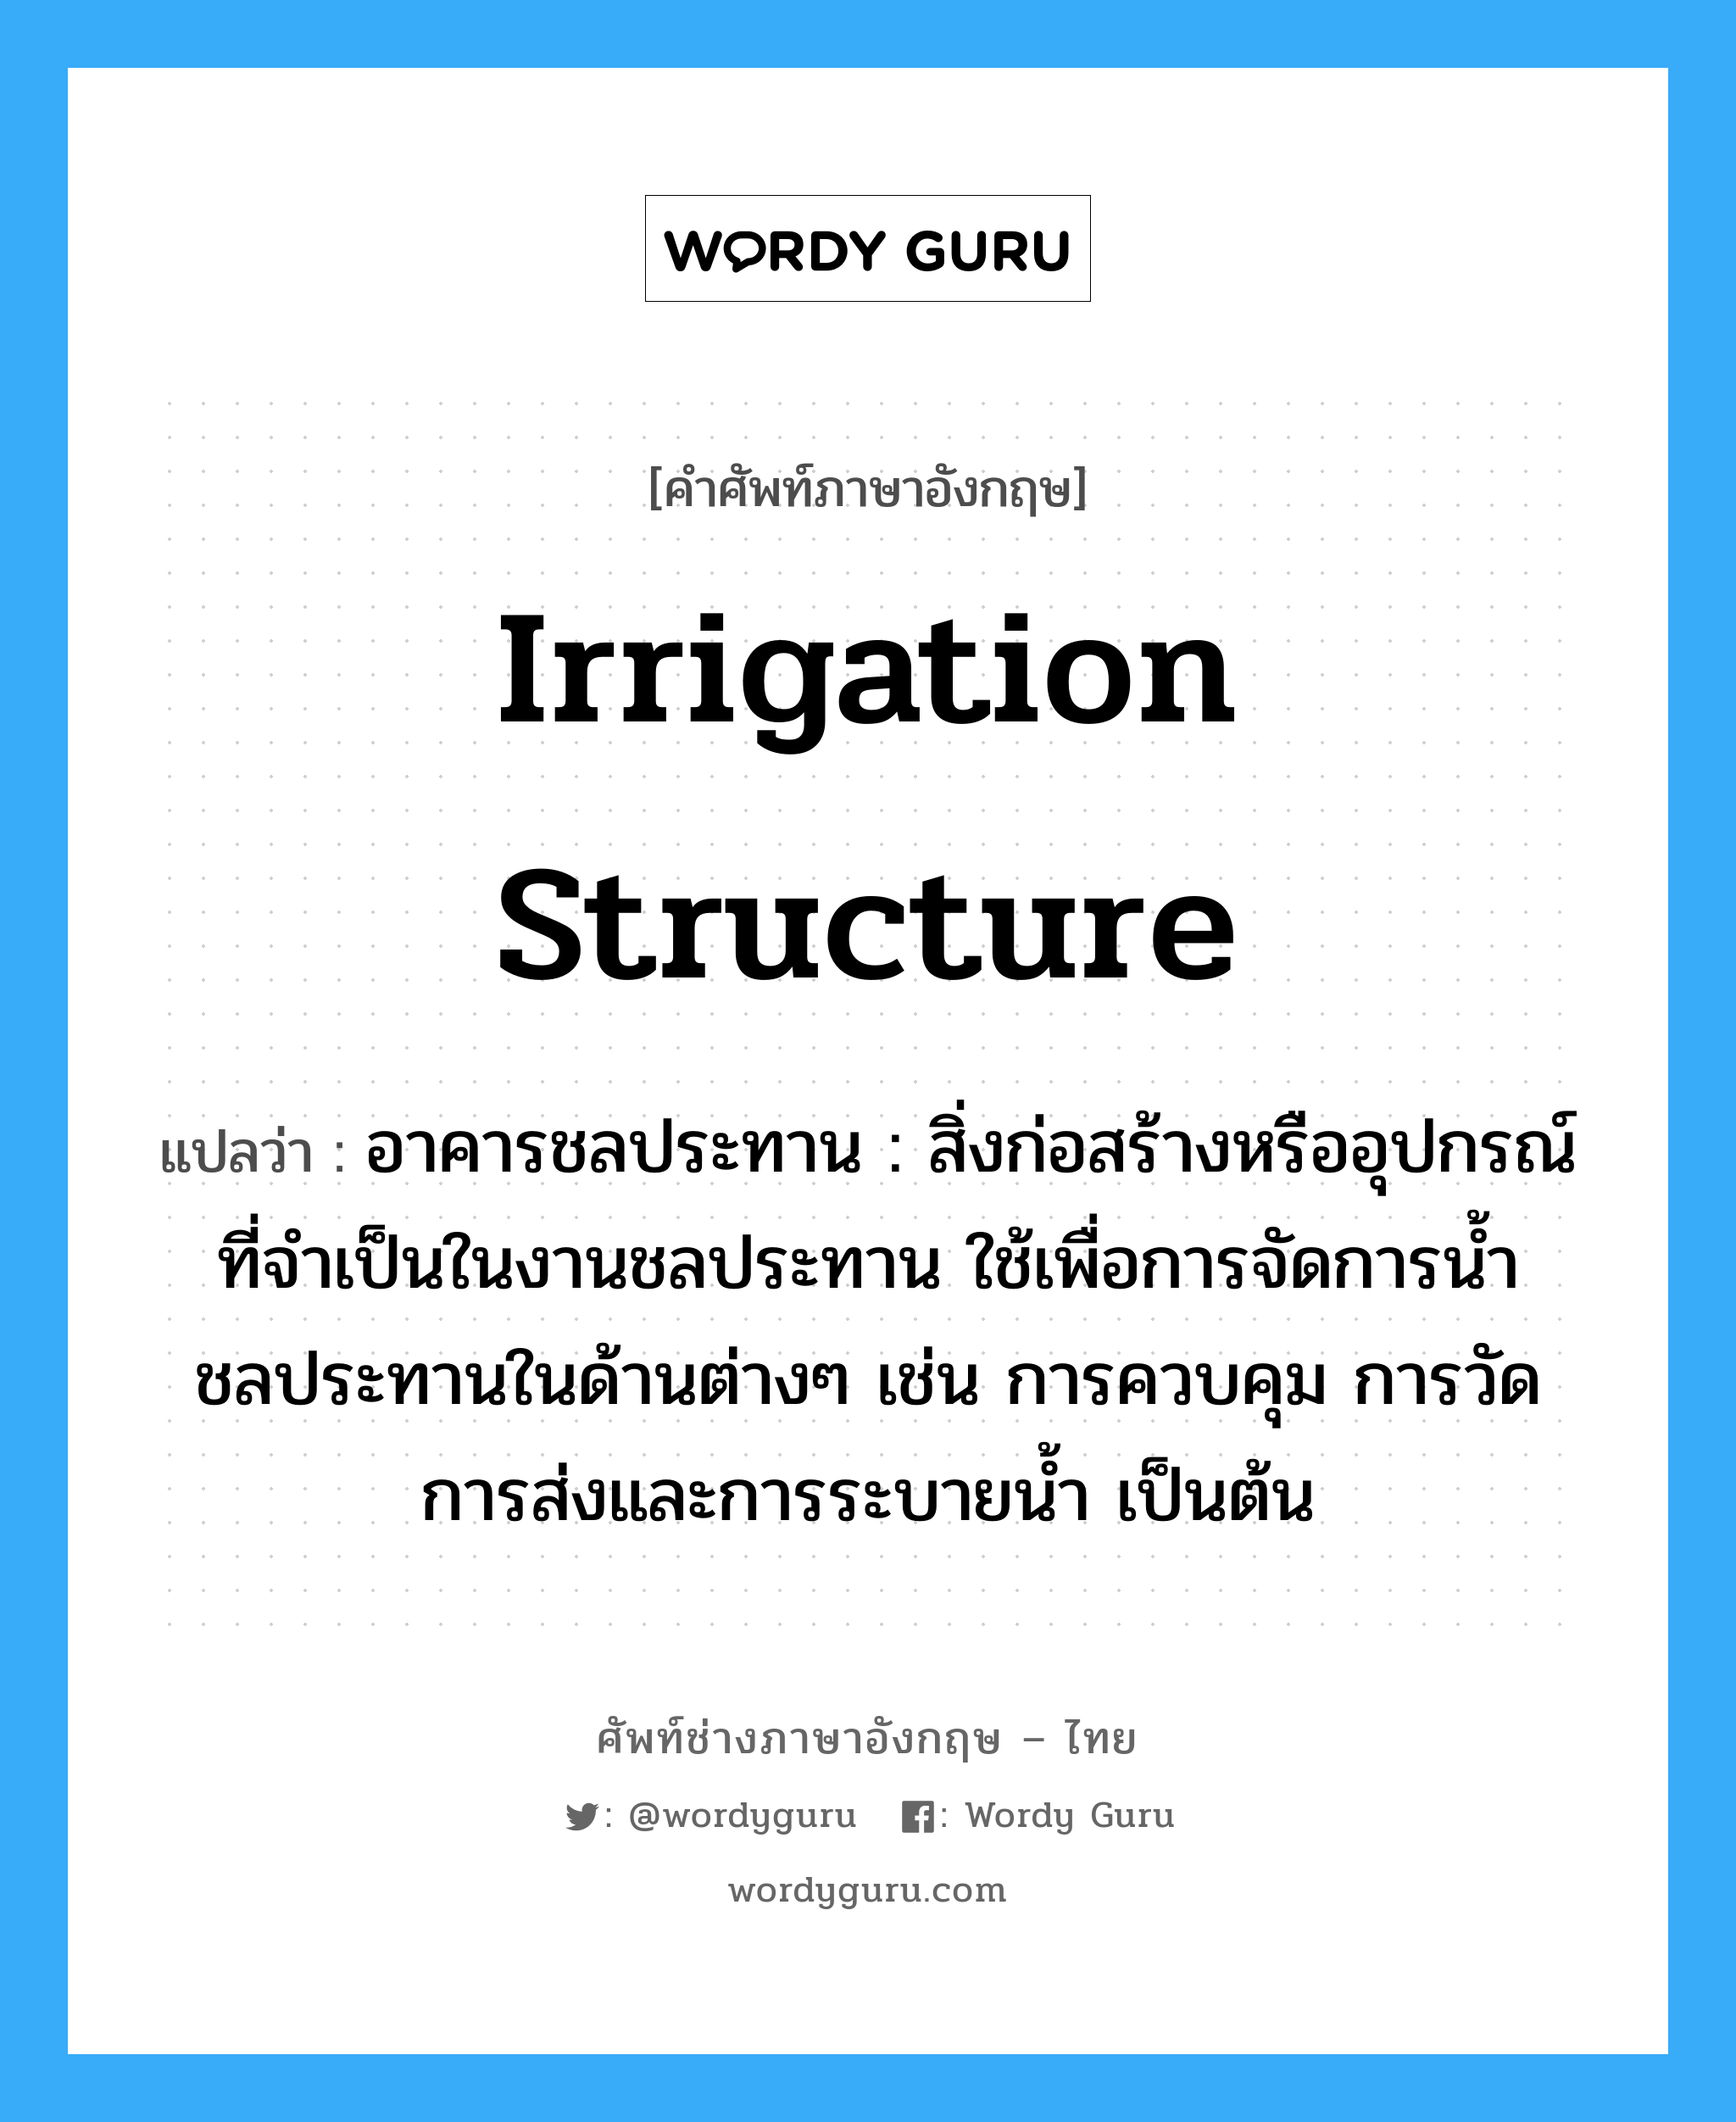 irrigation structure แปลว่า?, คำศัพท์ช่างภาษาอังกฤษ - ไทย irrigation structure คำศัพท์ภาษาอังกฤษ irrigation structure แปลว่า อาคารชลประทาน : สิ่งก่อสร้างหรืออุปกรณ์ที่จำเป็นในงานชลประทาน ใช้เพื่อการจัดการน้ำชลประทานในด้านต่างๆ เช่น การควบคุม การวัด การส่งและการระบายน้ำ เป็นต้น